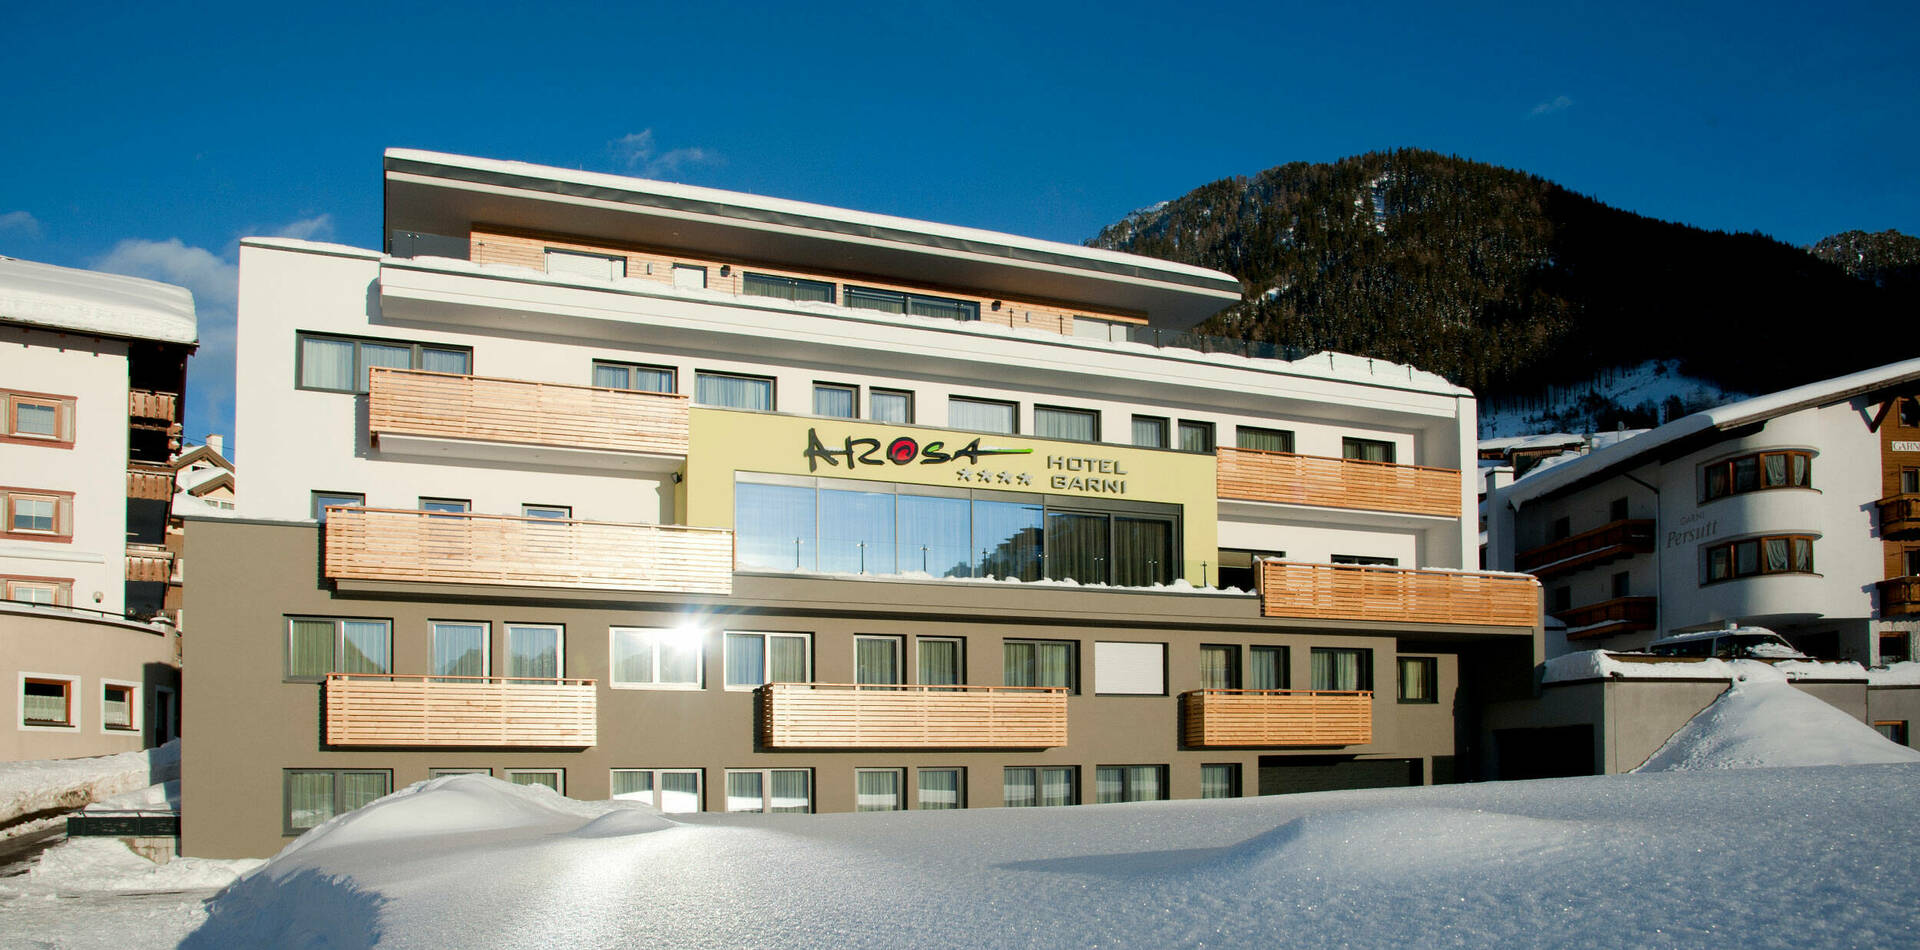 Hotel - Garni Arosa - Winter 